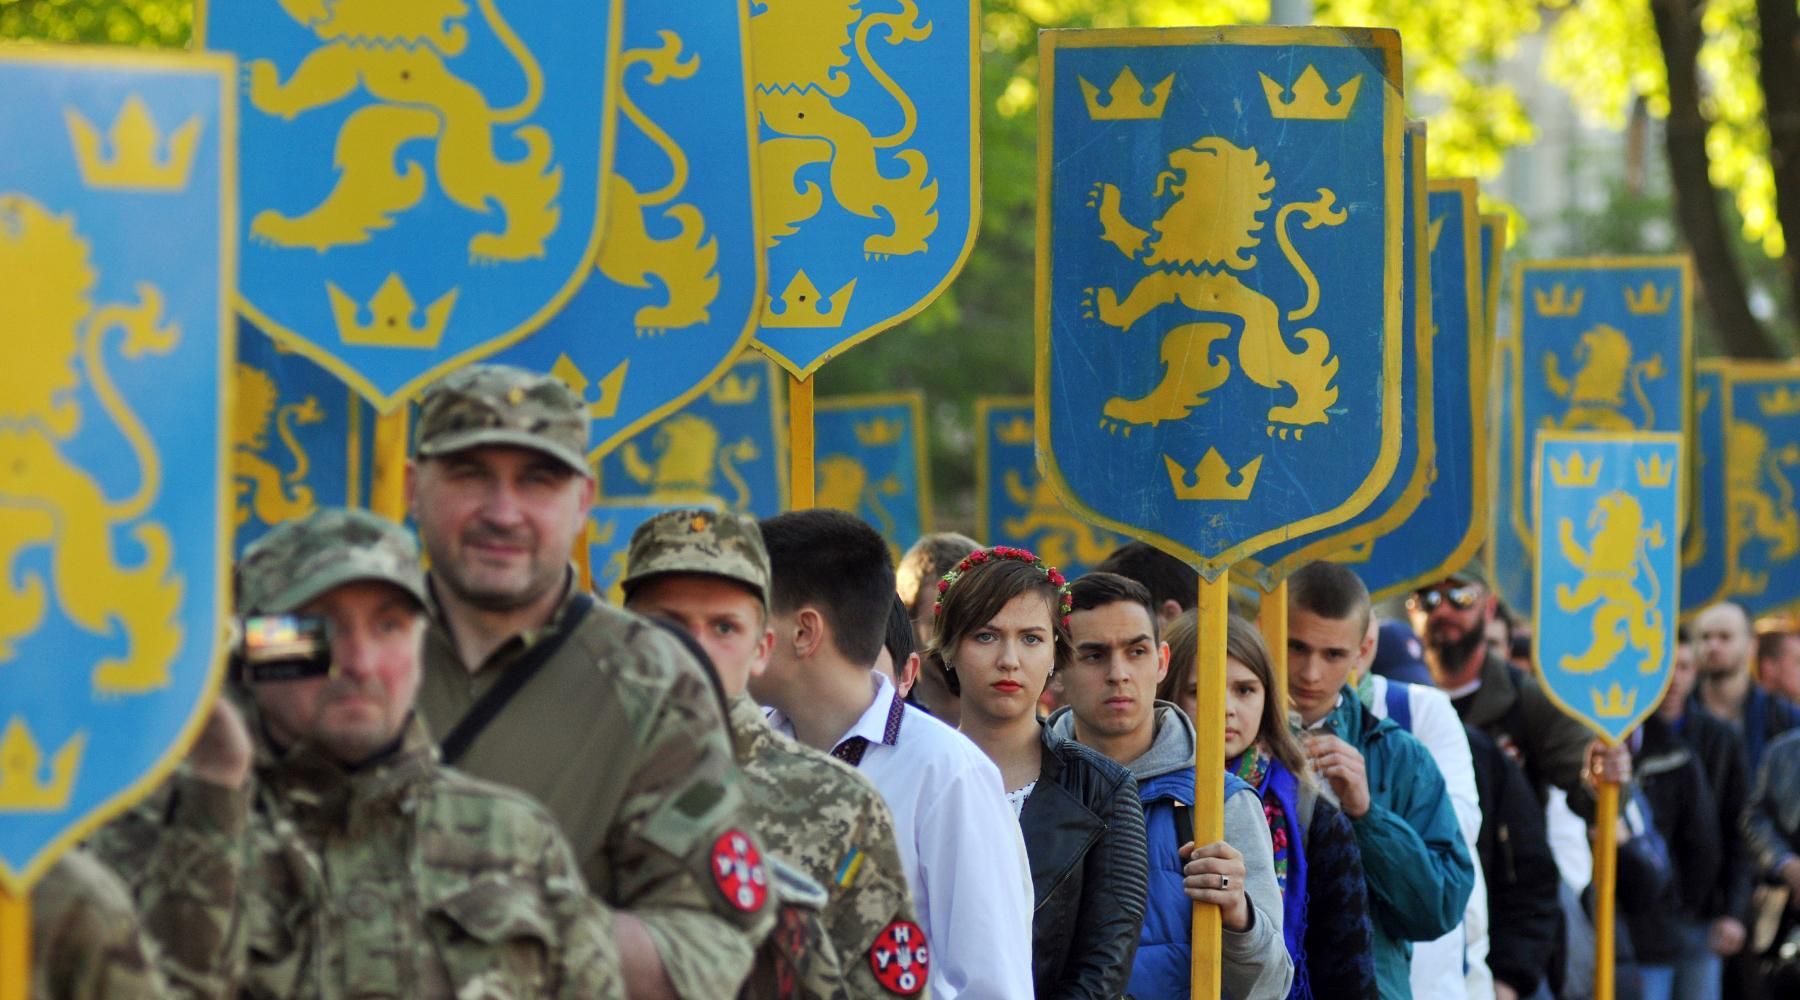 Шествие в честь годовщины создания дивизии СС «Галичина» во Львове*, 2016 год РИА Новости